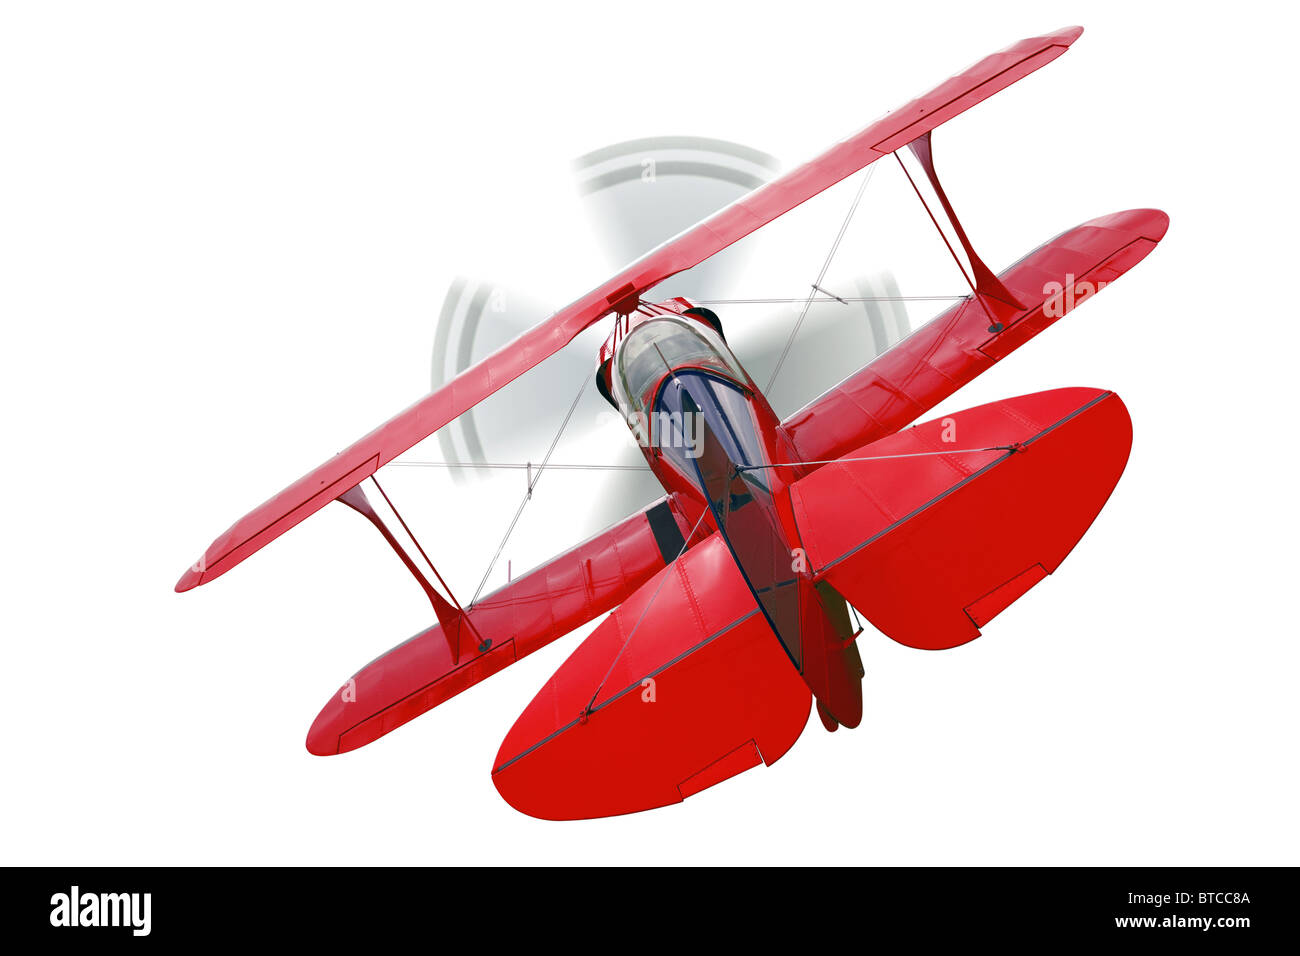 Un biplan rouge, vue arrière avec hélice dans Motion, isolé sur un fond blanc. Banque D'Images